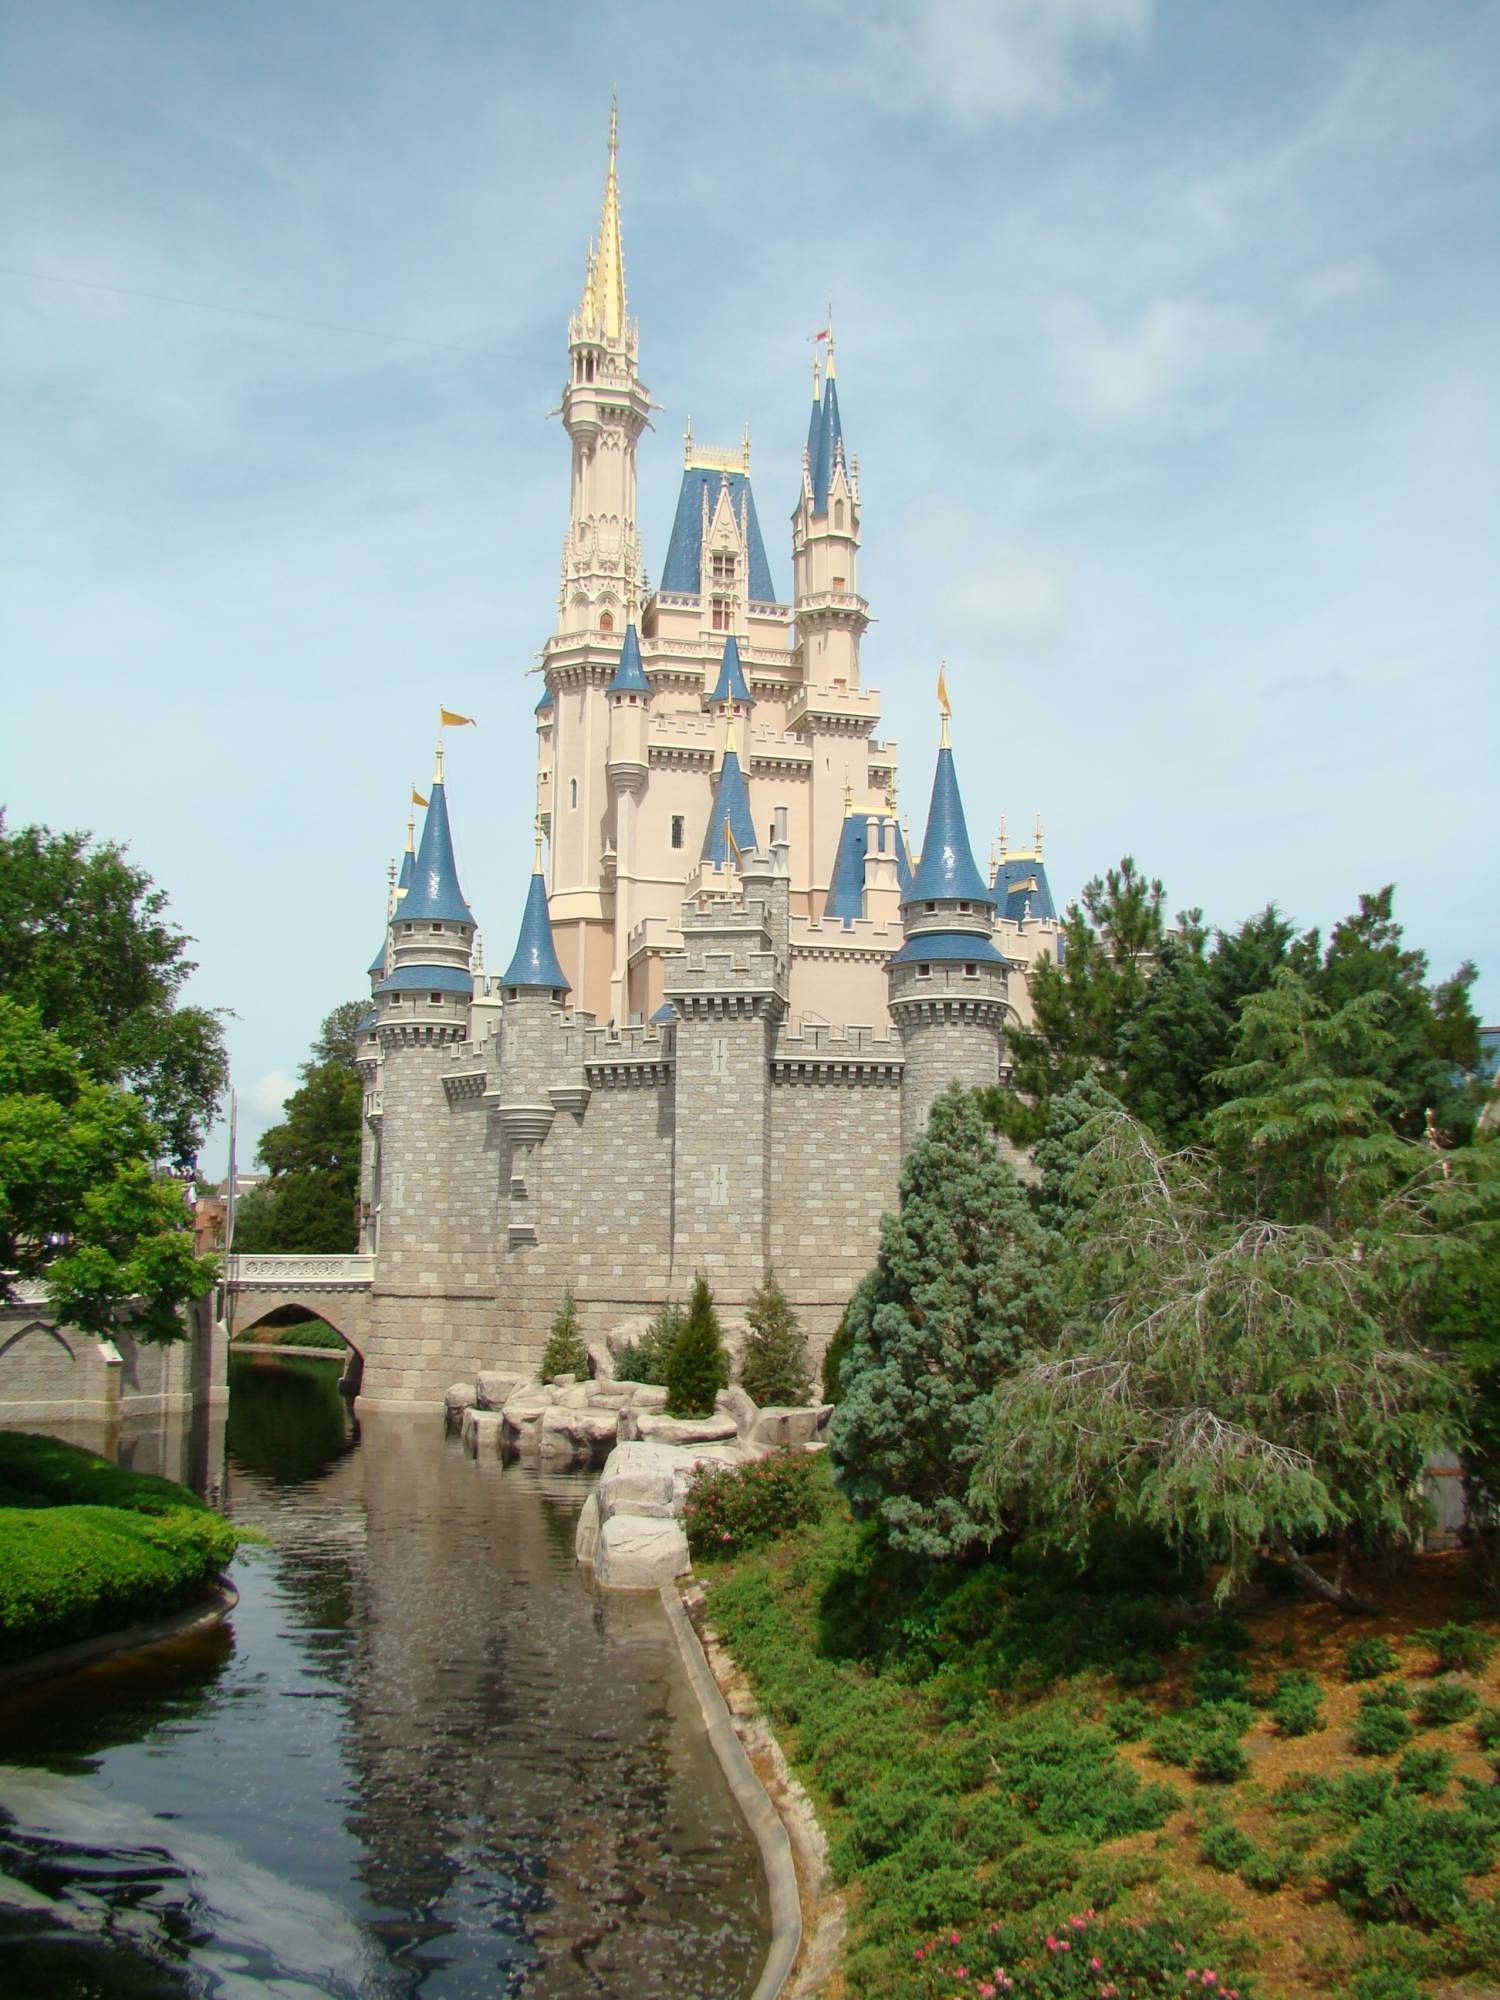 Cinderella's Home